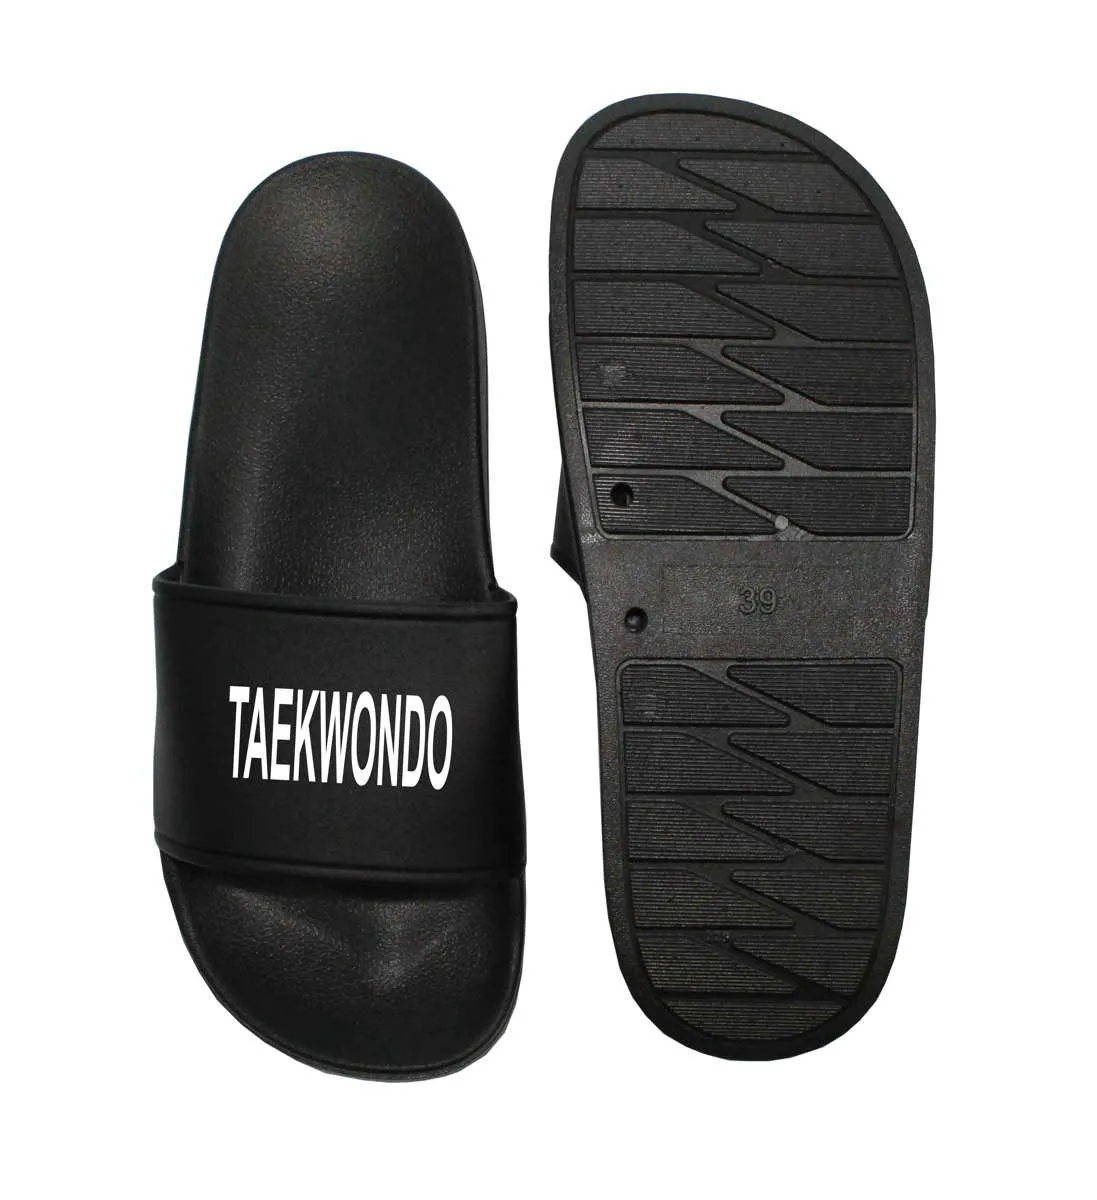 Taekwondo slippers black